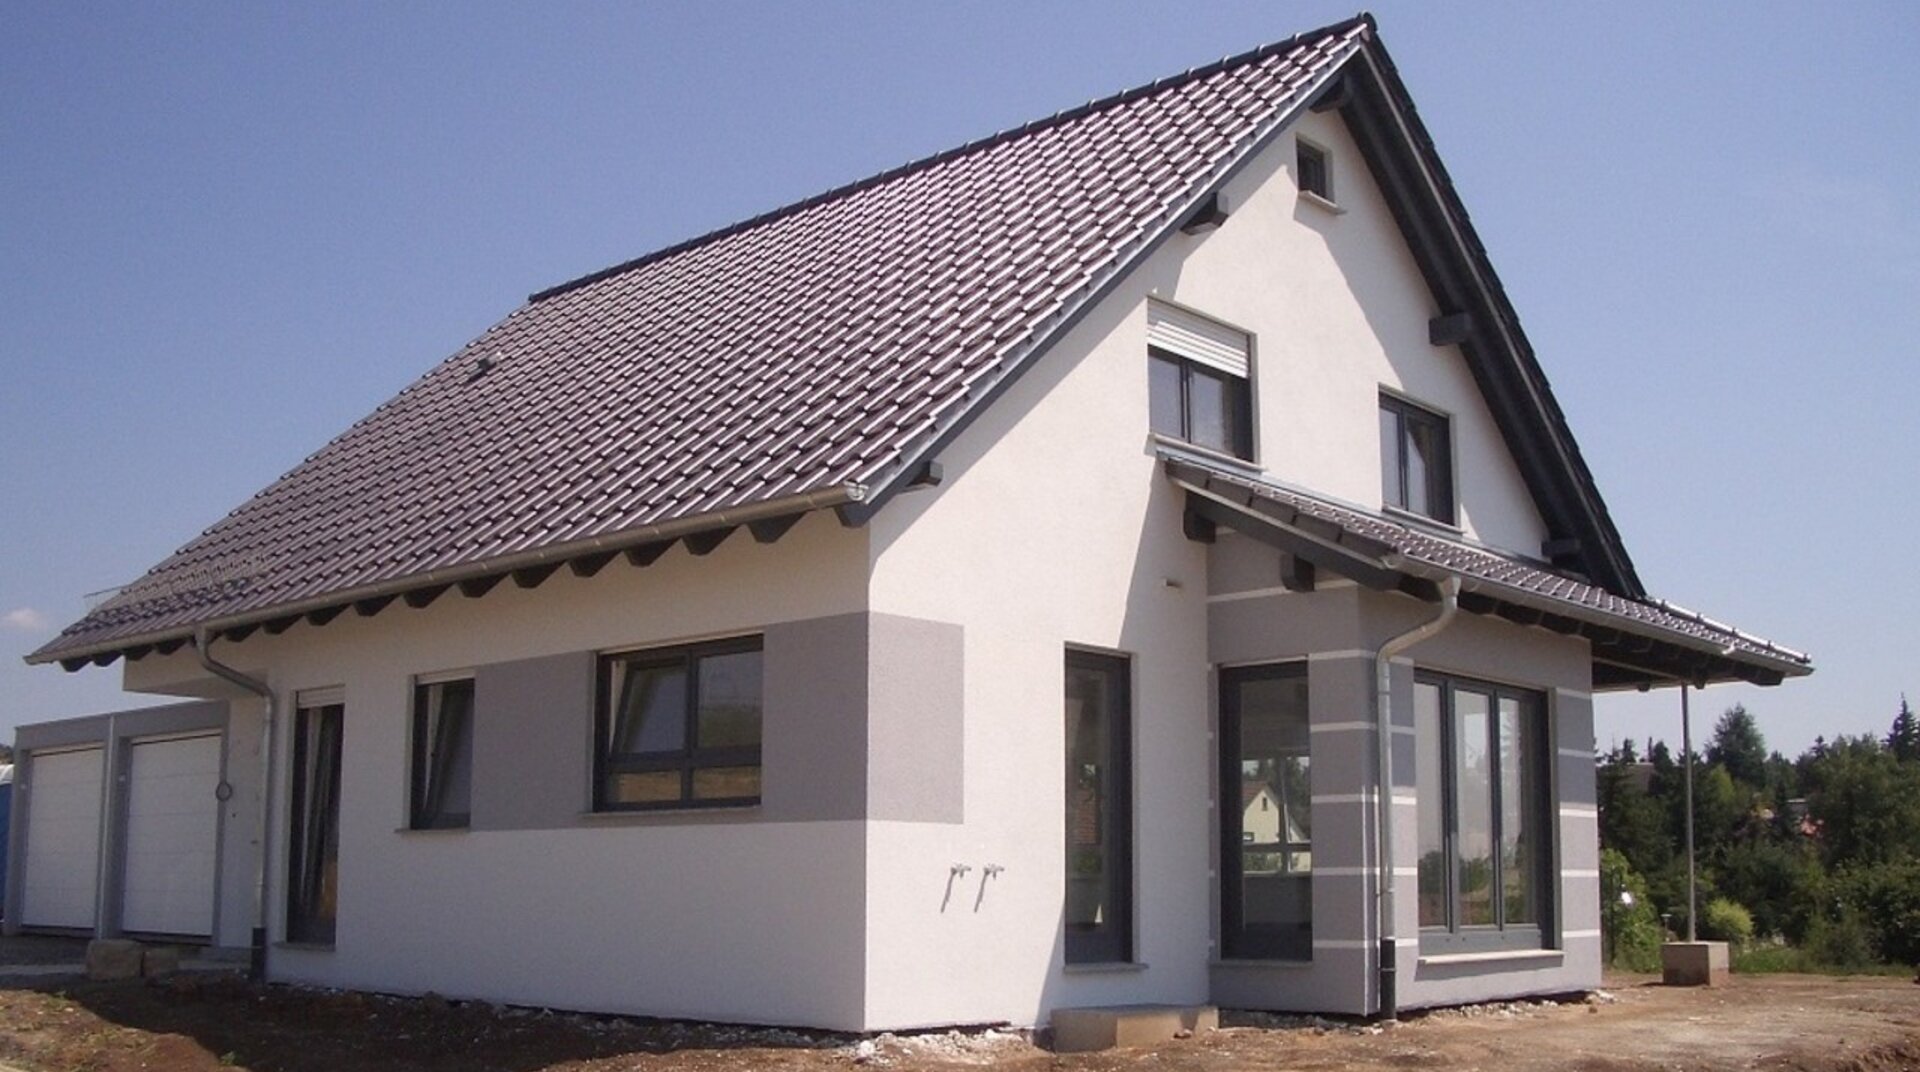 KHB-Creativ EFH Talheim, Haus von Hause, Blick auf die weiße Fassade und das graue Dach